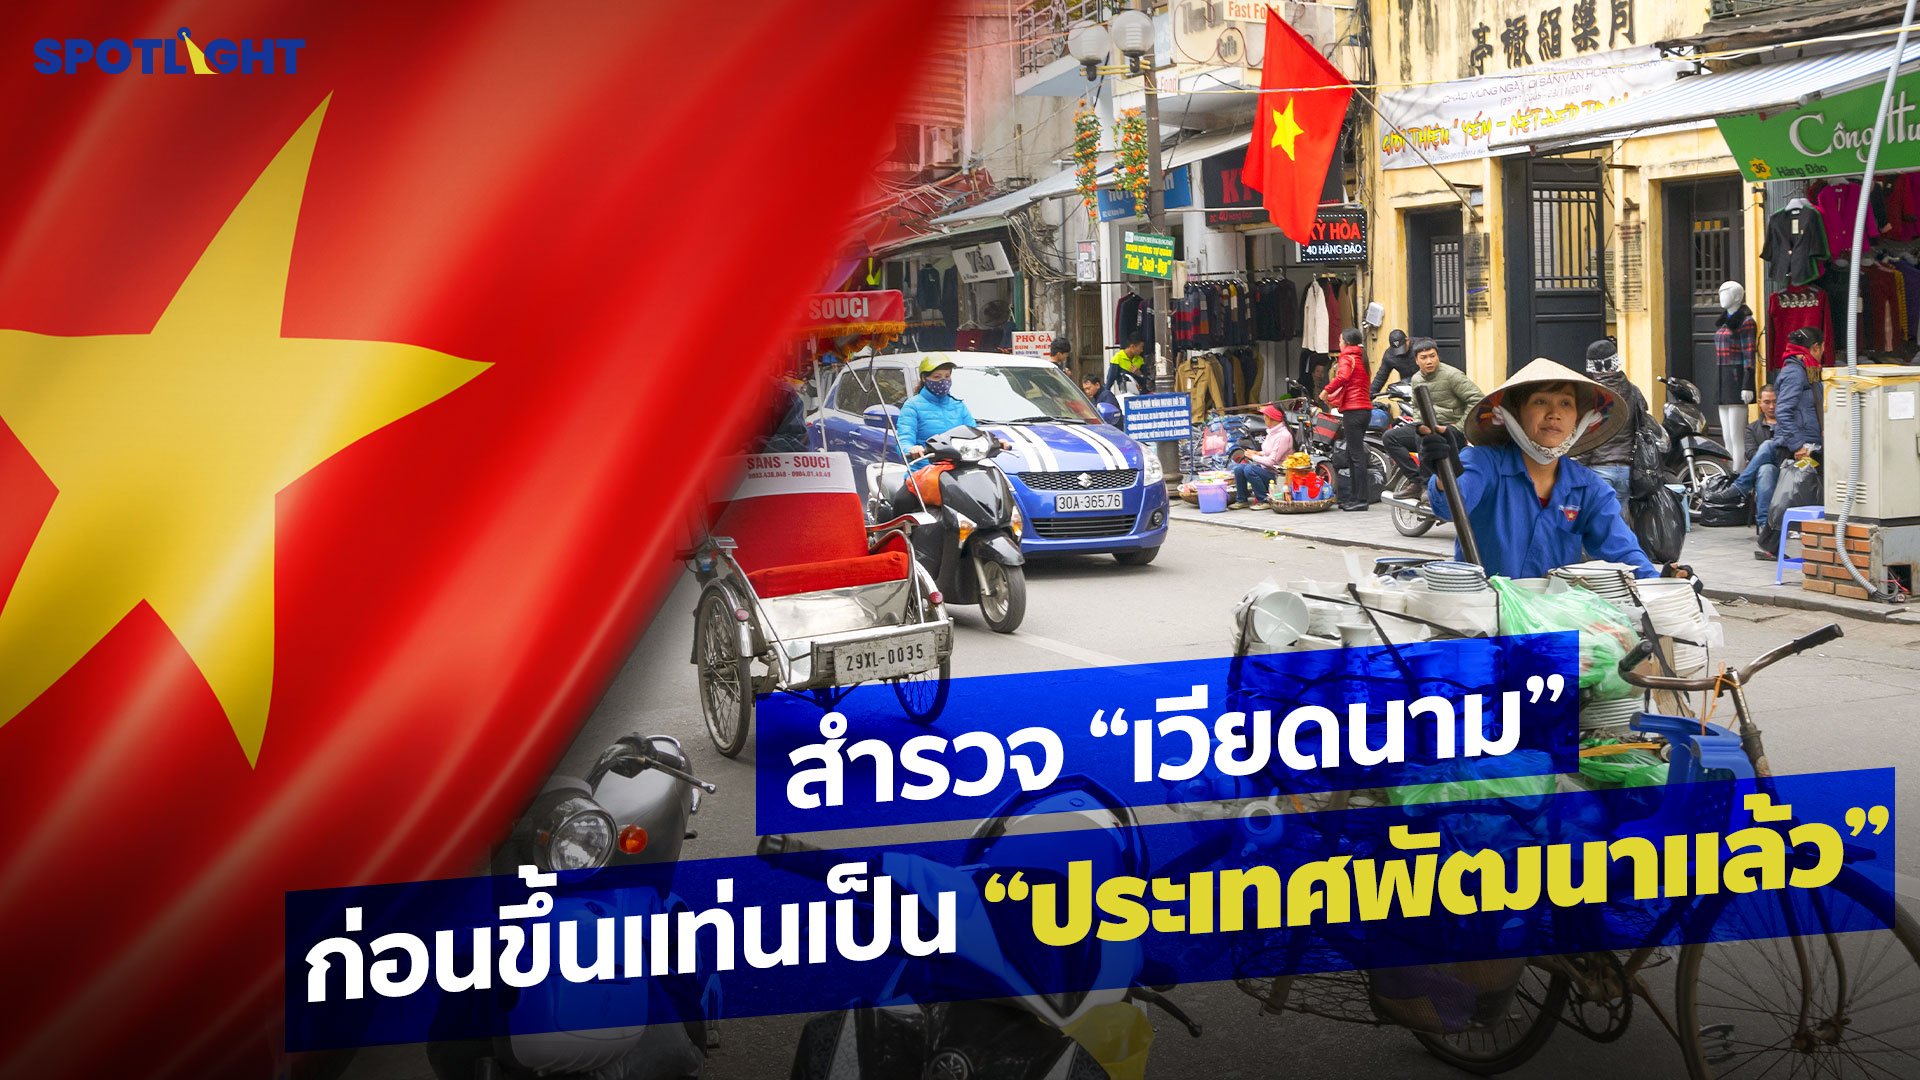 สำรวจ "เวียดนาม" ก่อนขึ้นแท่นเป็นประเทศพัฒนาแล้ว  | Spotlight | 17 ส.ค. 65 | AMARIN TVHD34